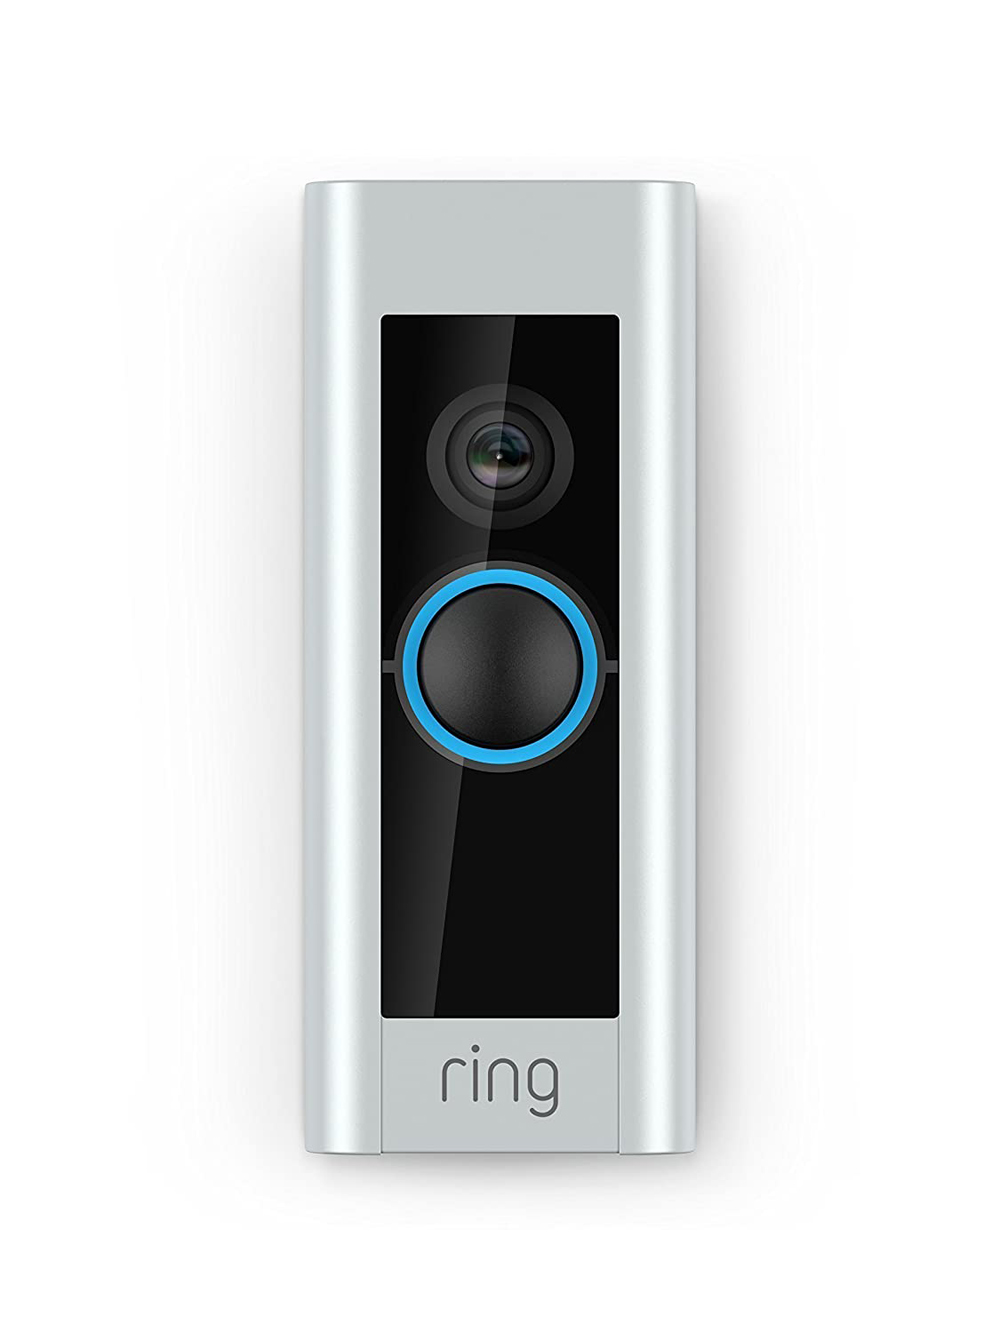 A video smart doorbell in grey